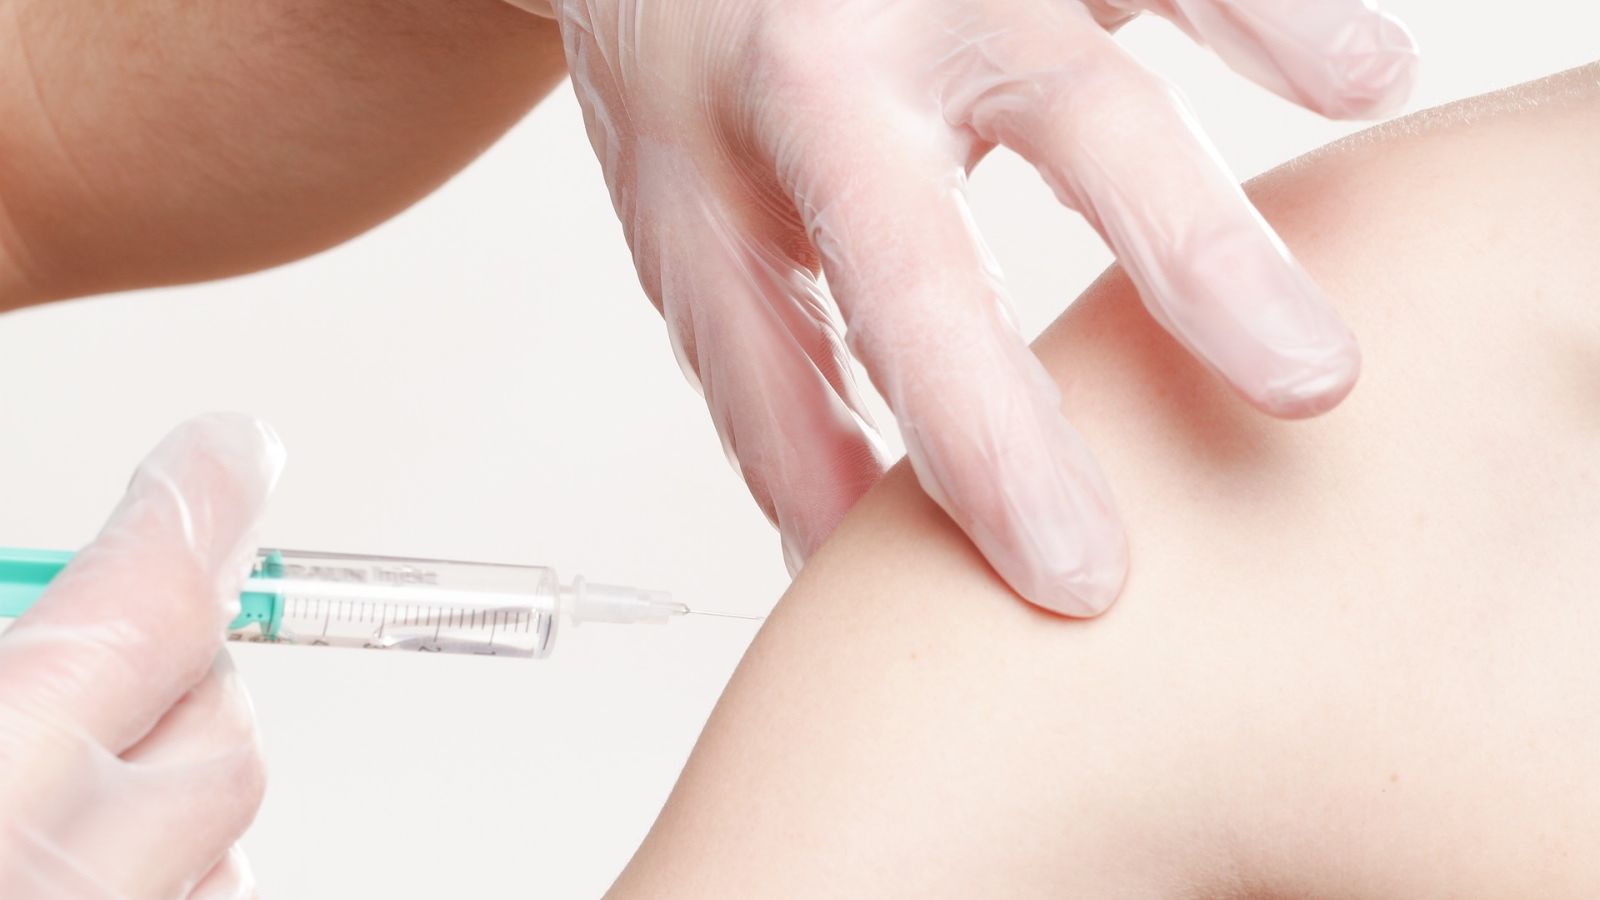 Impfrate für die Grippeschutzimpfung liegt weit unter den Empfehlungen